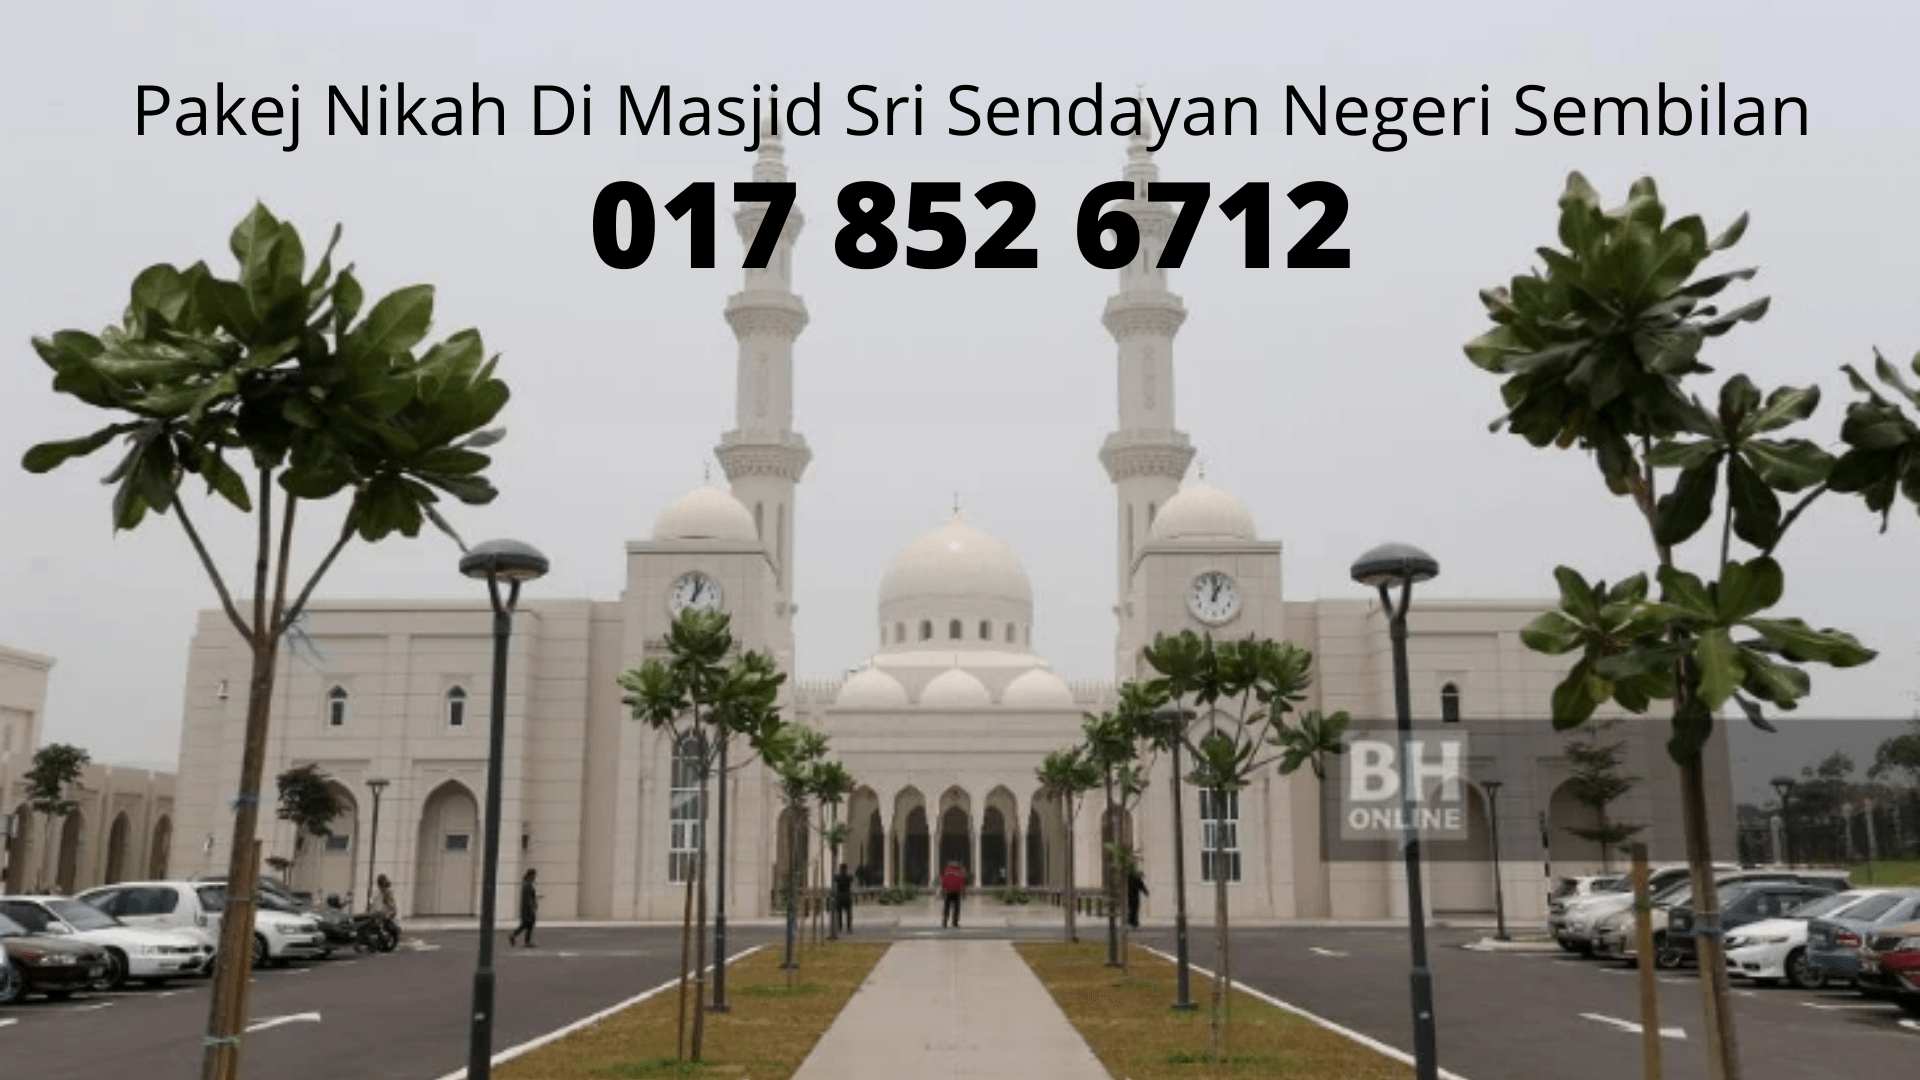 Pakej-Nikah-Di-Masjid-Sri-Sendayan-Negeri-Sembilan-0178526712